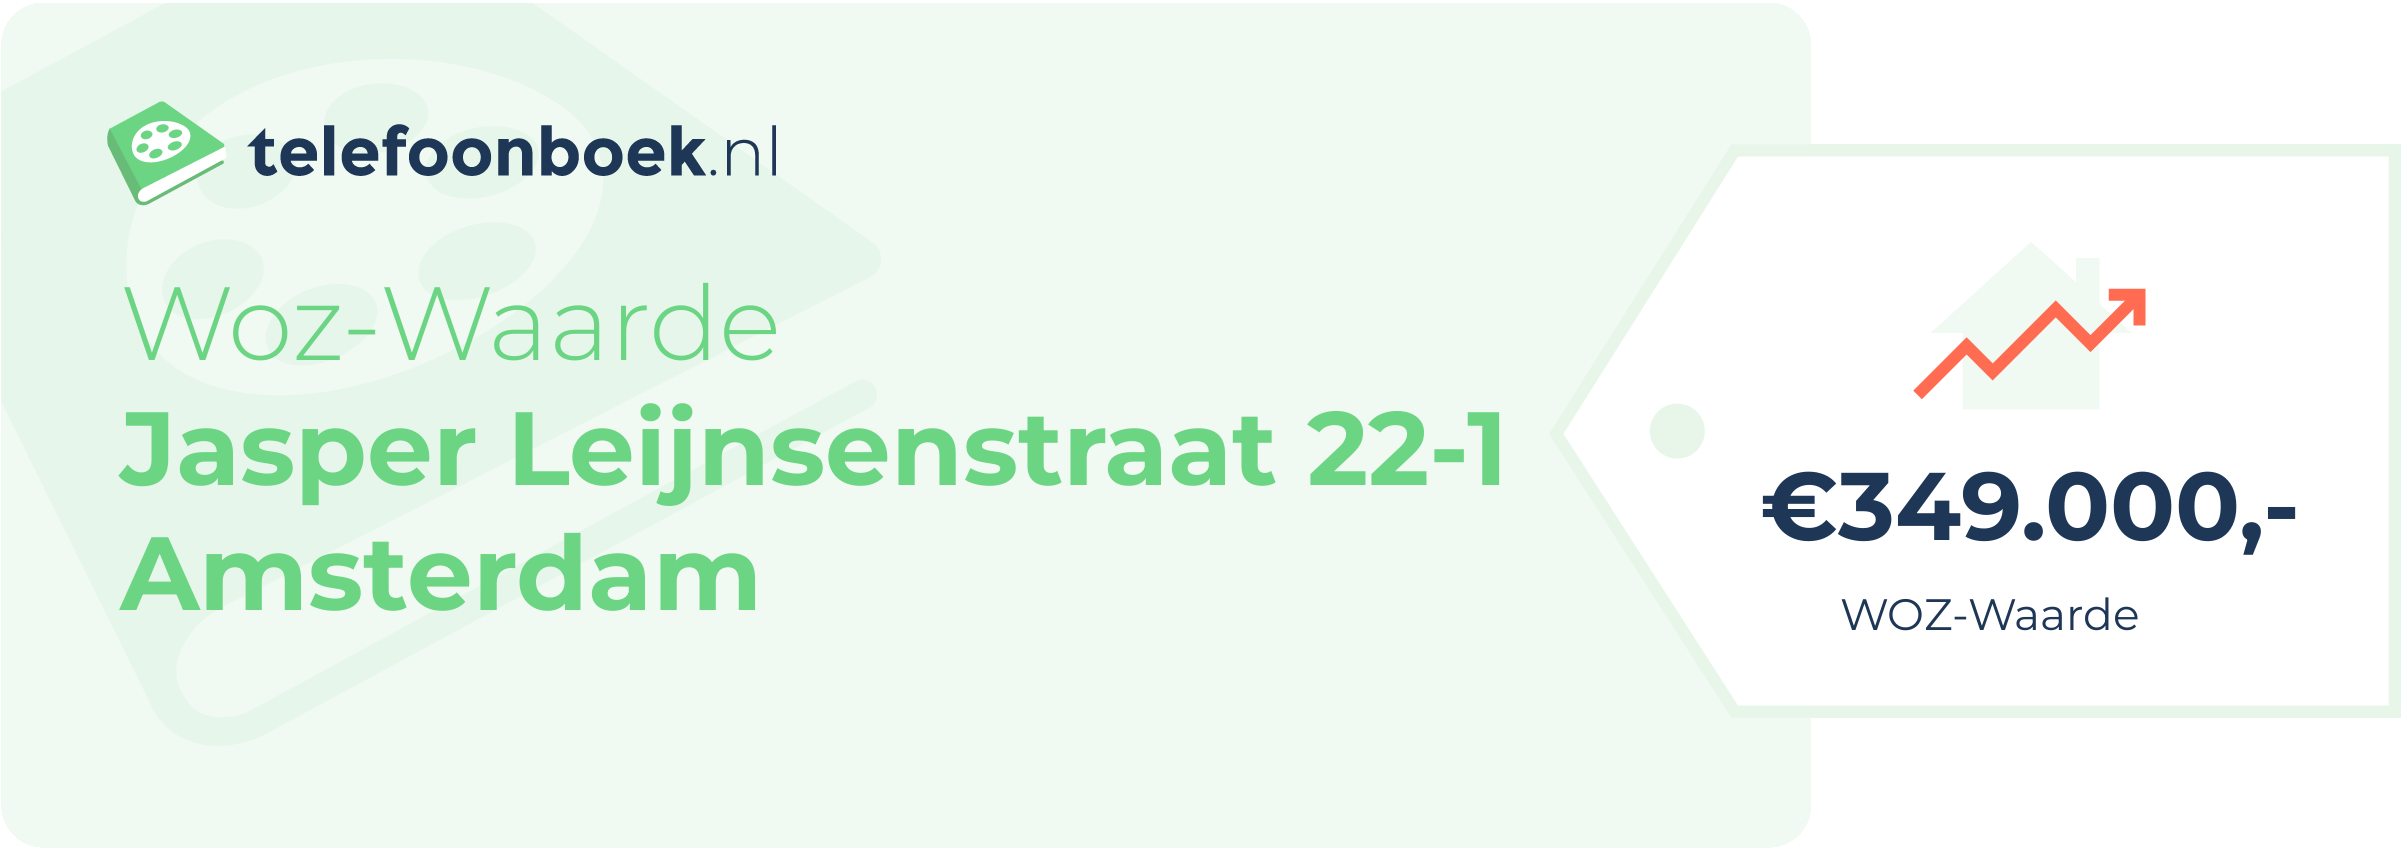 WOZ-waarde Jasper Leijnsenstraat 22-1 Amsterdam